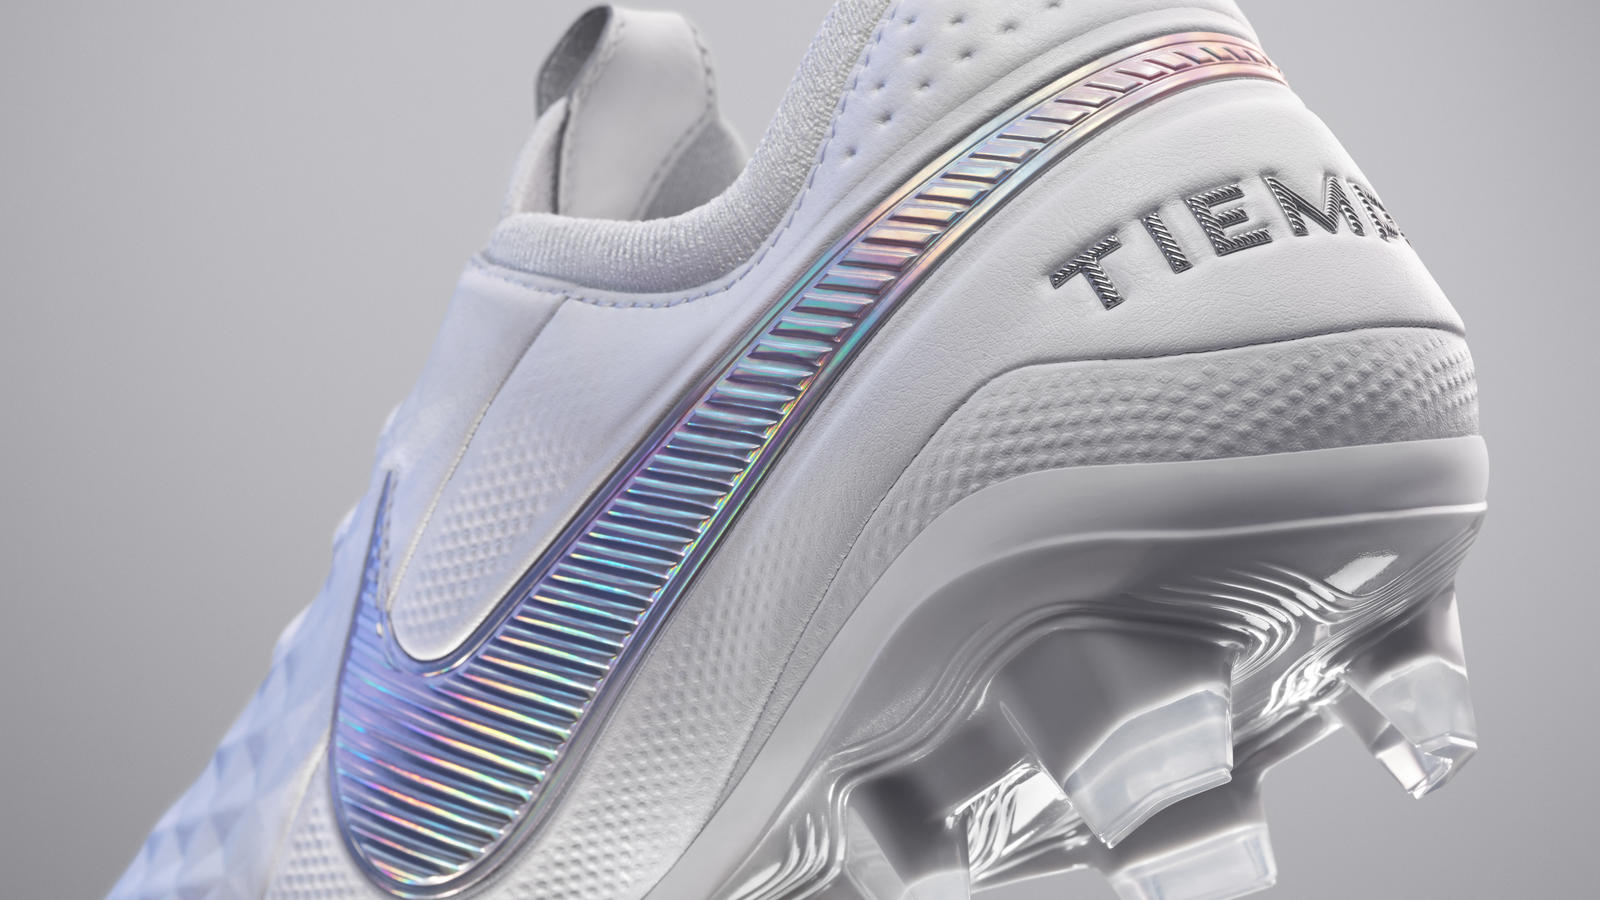 Giày bóng đá Nike Tiempo được chia thành 4 phân khúc với mức giá khác nhau